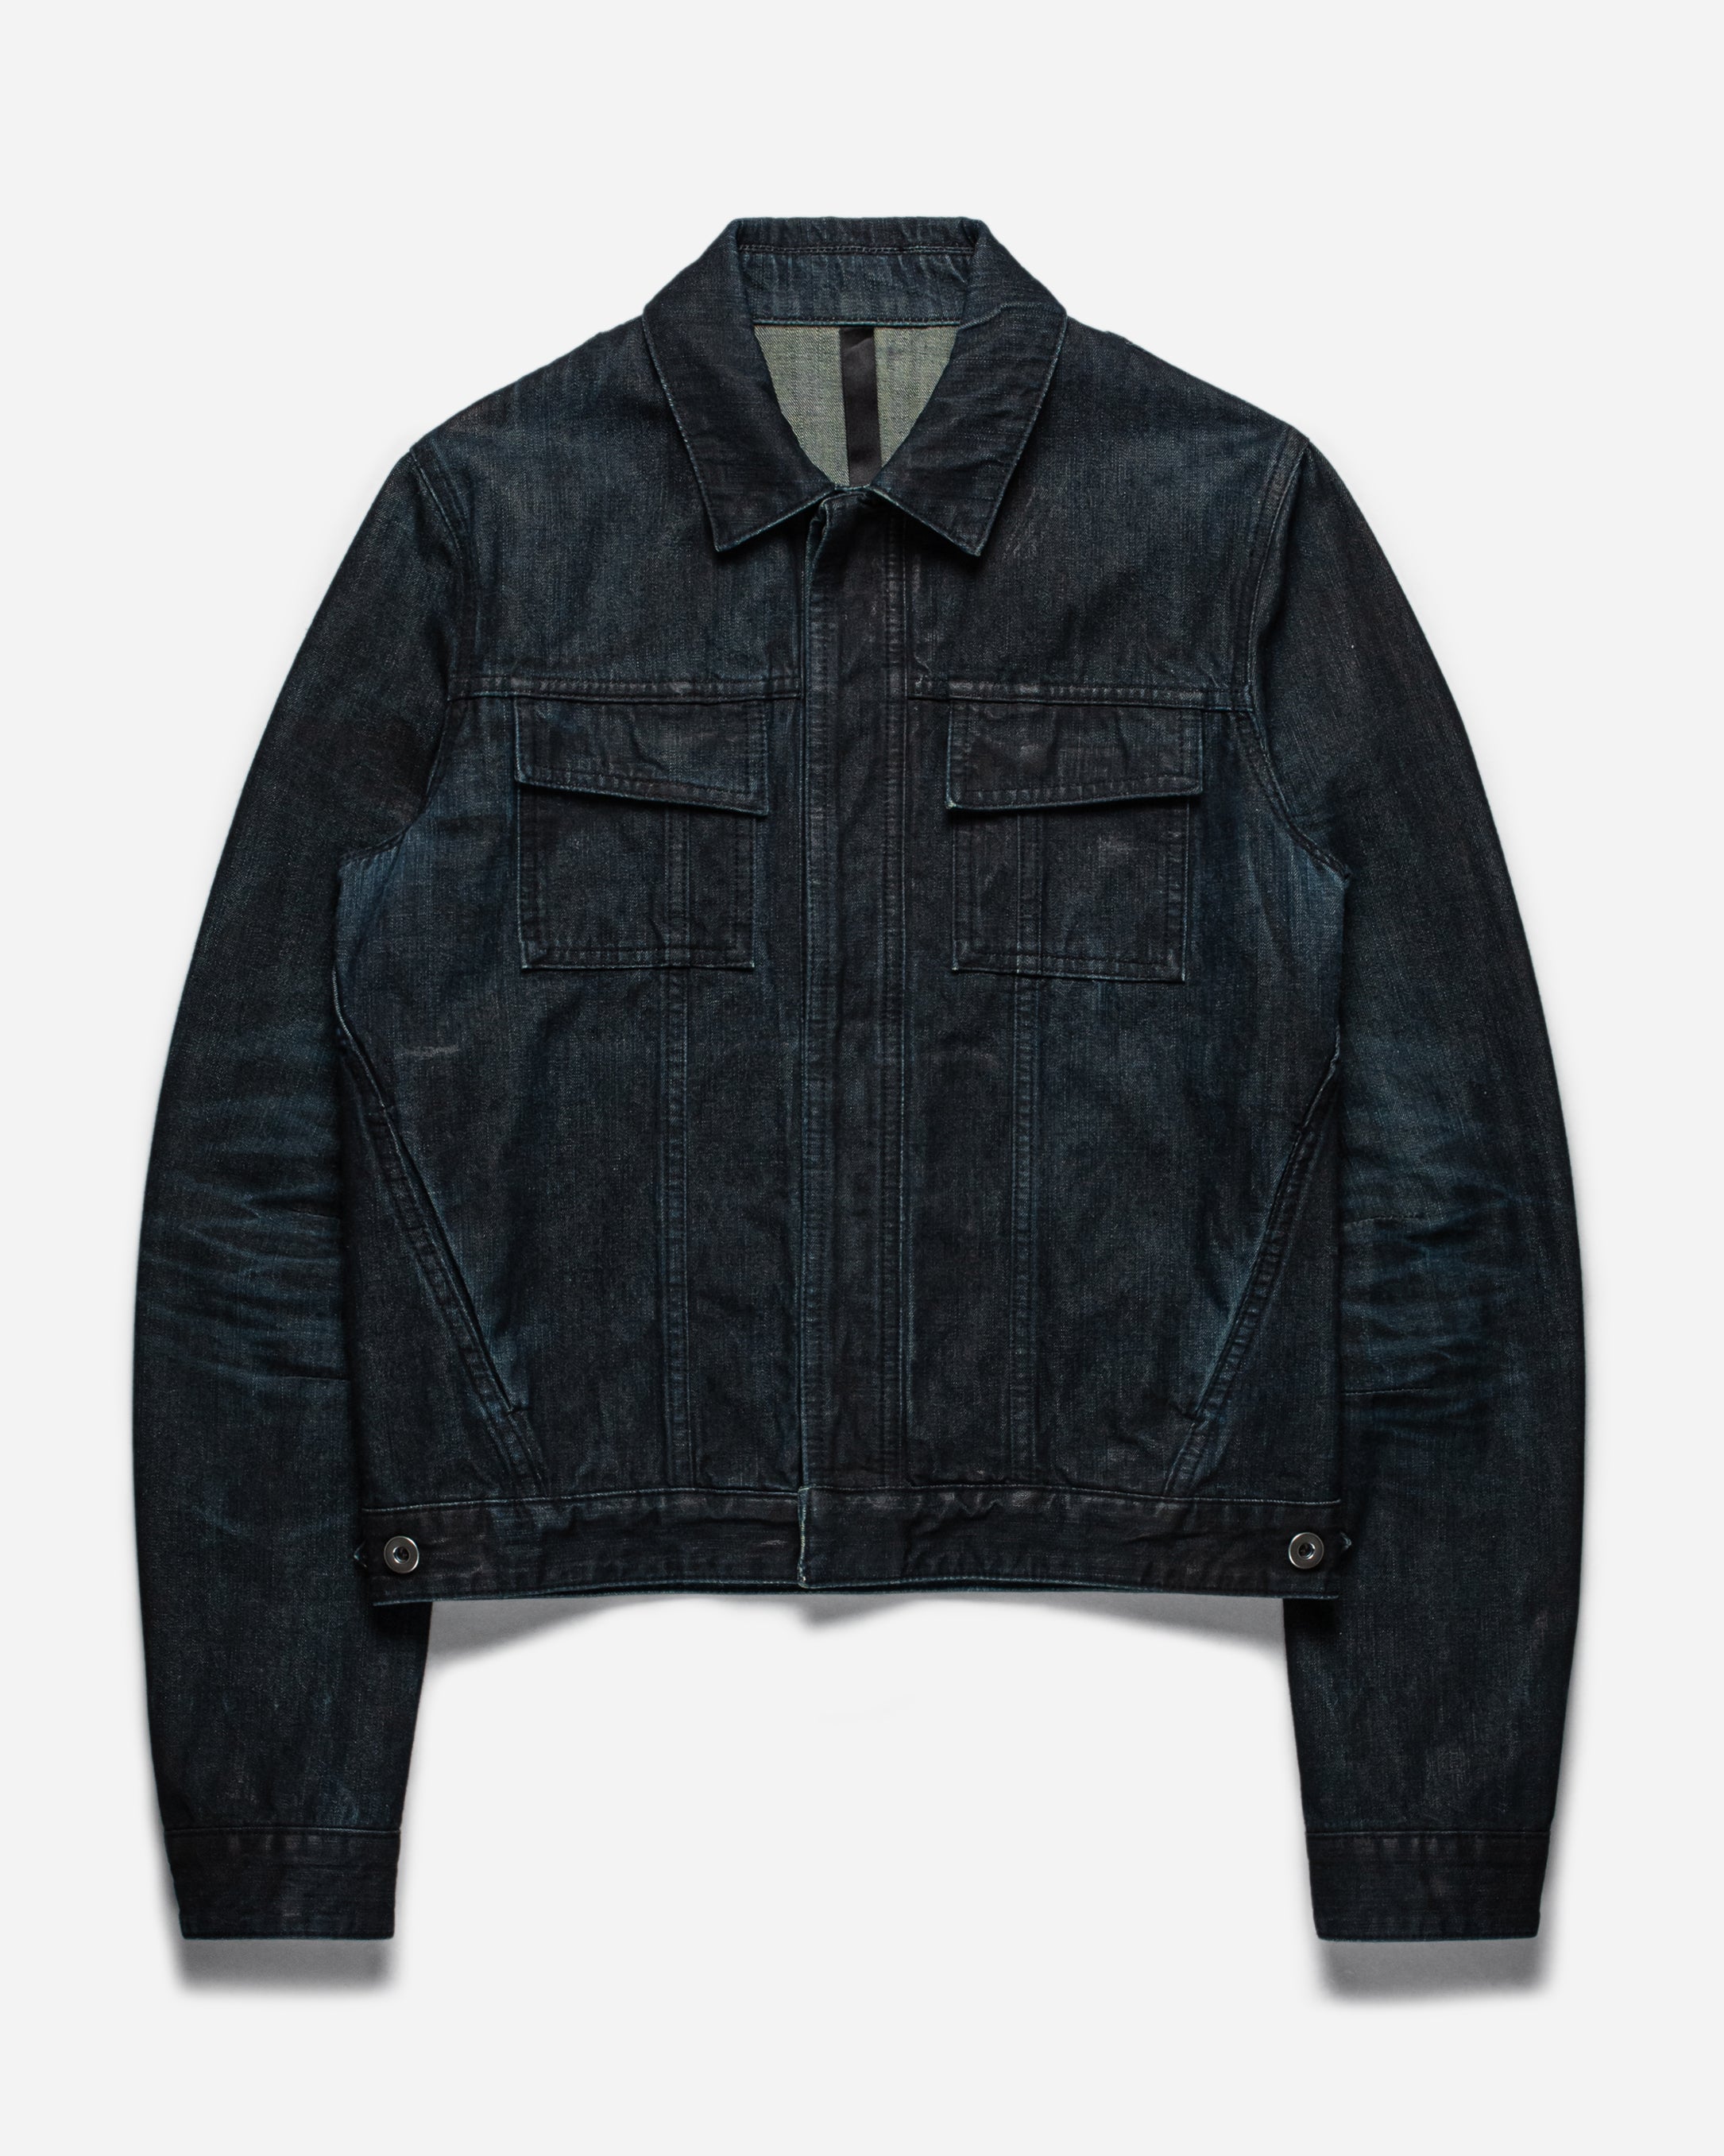 2008 Balenciaga Black Biker Leather Jacket sz 38  eBay